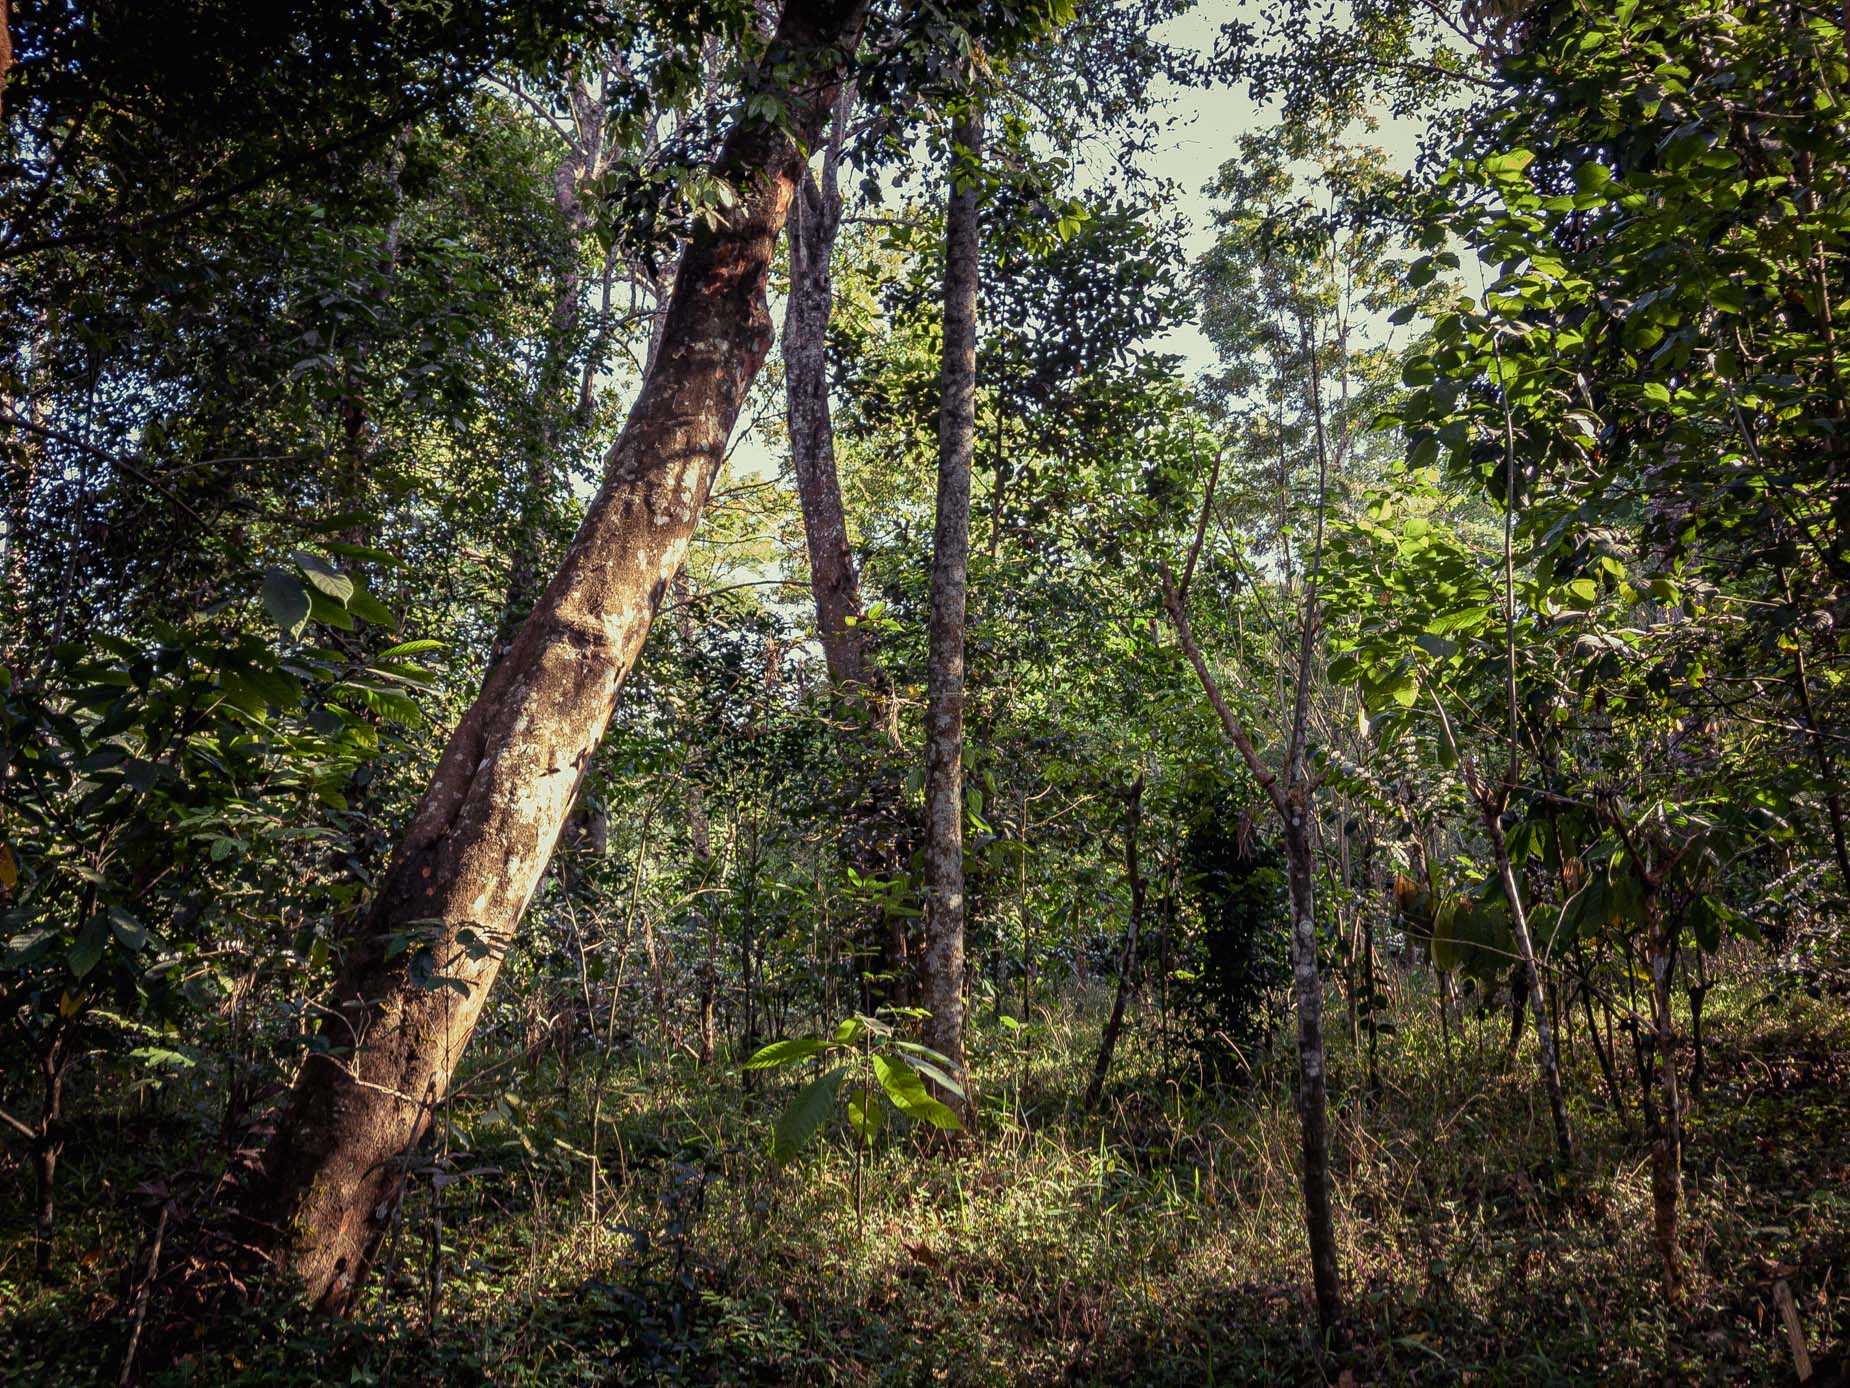 Un modèle d’agroforesterie au cœur de la forêt humide sur la chaîne des Ghâts occidentaux au Karnataka